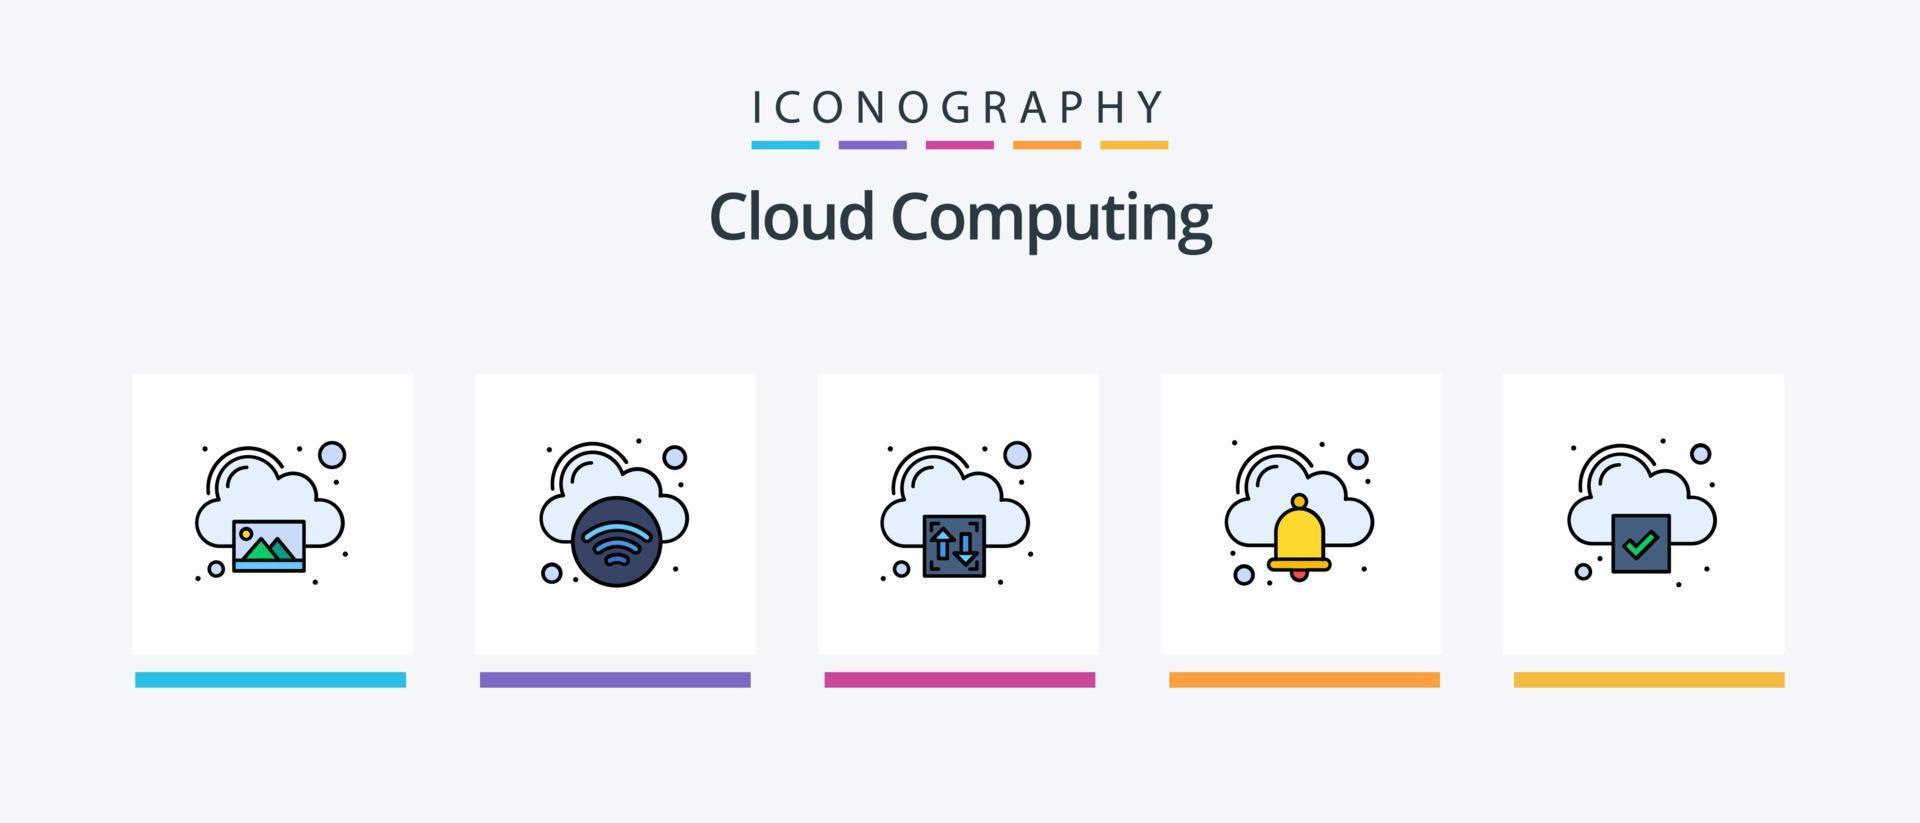 la línea de computación en la nube llenó el paquete de 5 íconos que incluye la configuración. nube. video. nube. diseño de iconos creativos vector